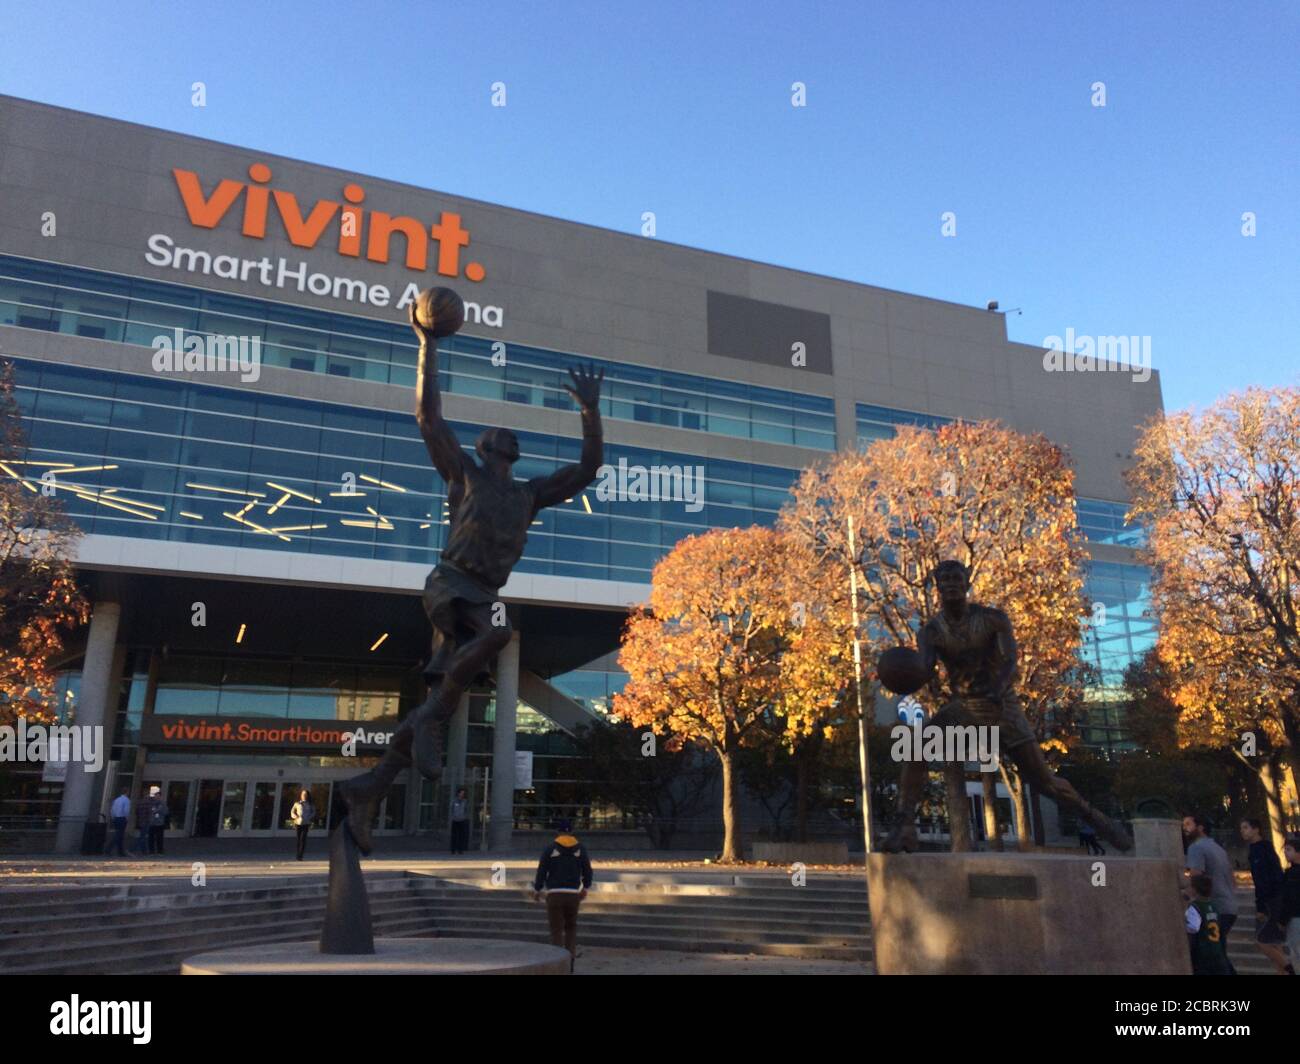 Vivint Smart Home Arena. Squadra di pallacanestro dell'NBA Utah Jazz gioca a casa in questa arena. Leggende del club Karl Malone e John Stockton statue. Foto Stock